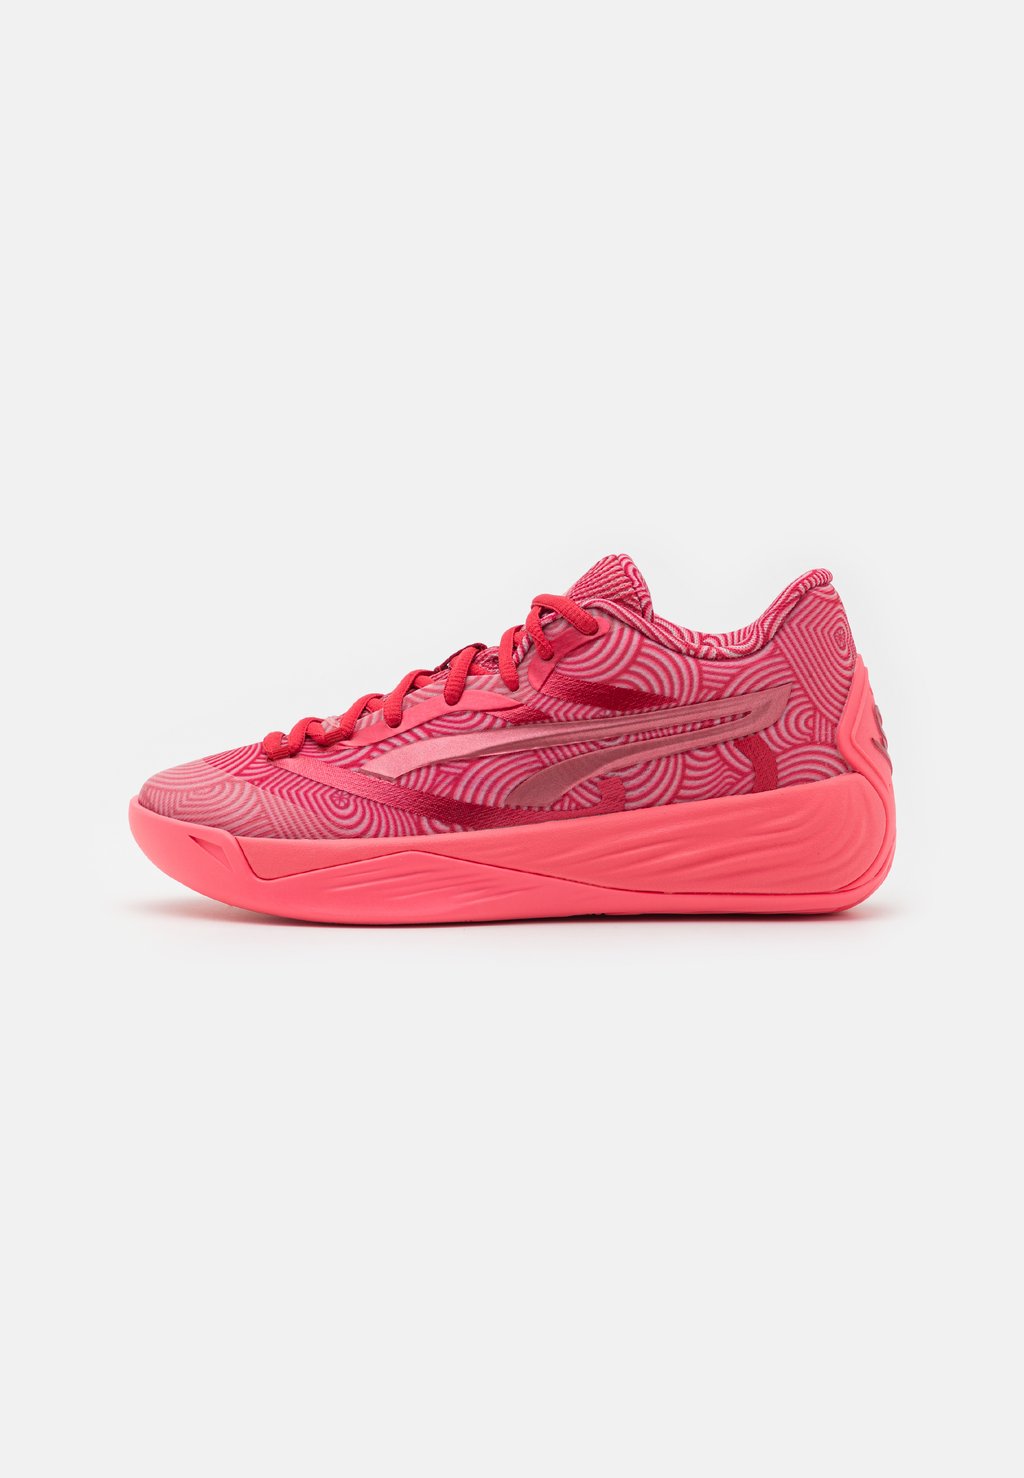 Баскетбольные кроссовки STEWIE 2 Puma, цвет passionfruit/club red